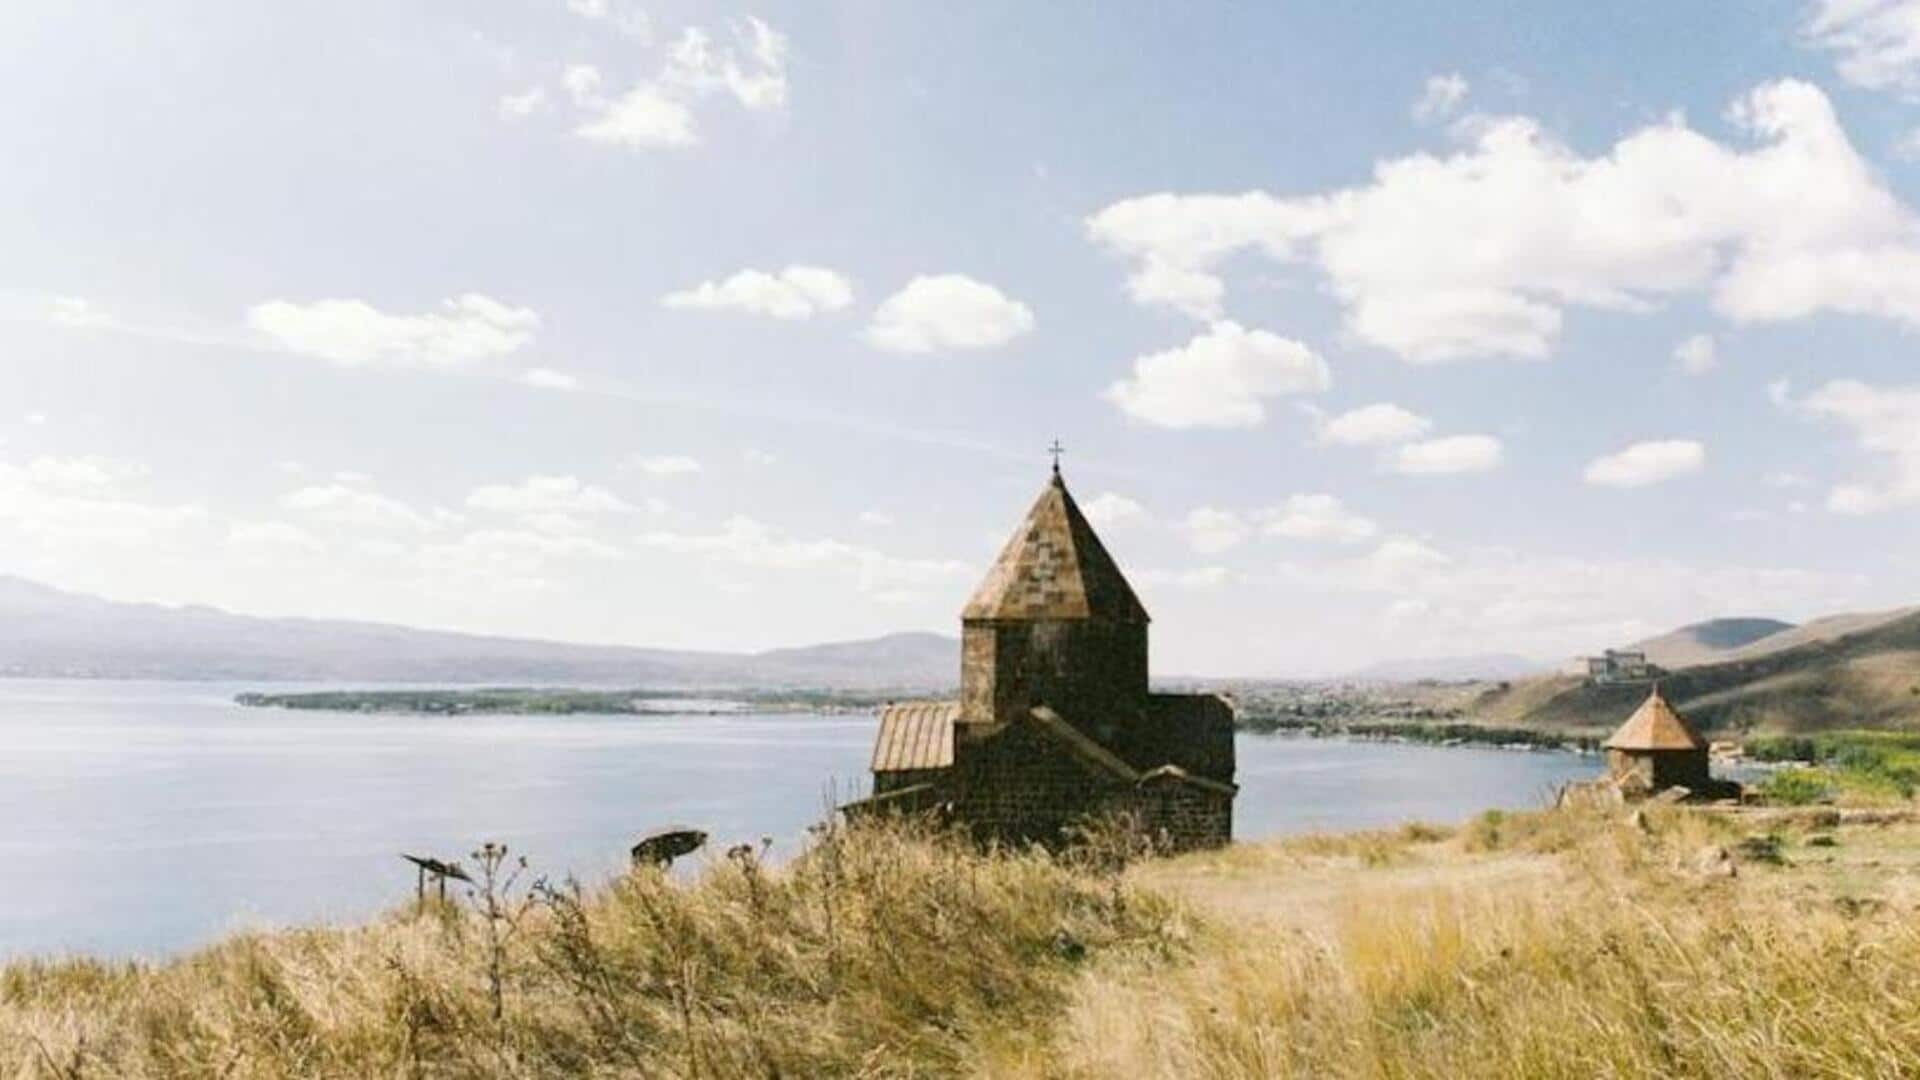 Petualangan di Armenia: Kegiatan yang harus dilakukan di negara ini